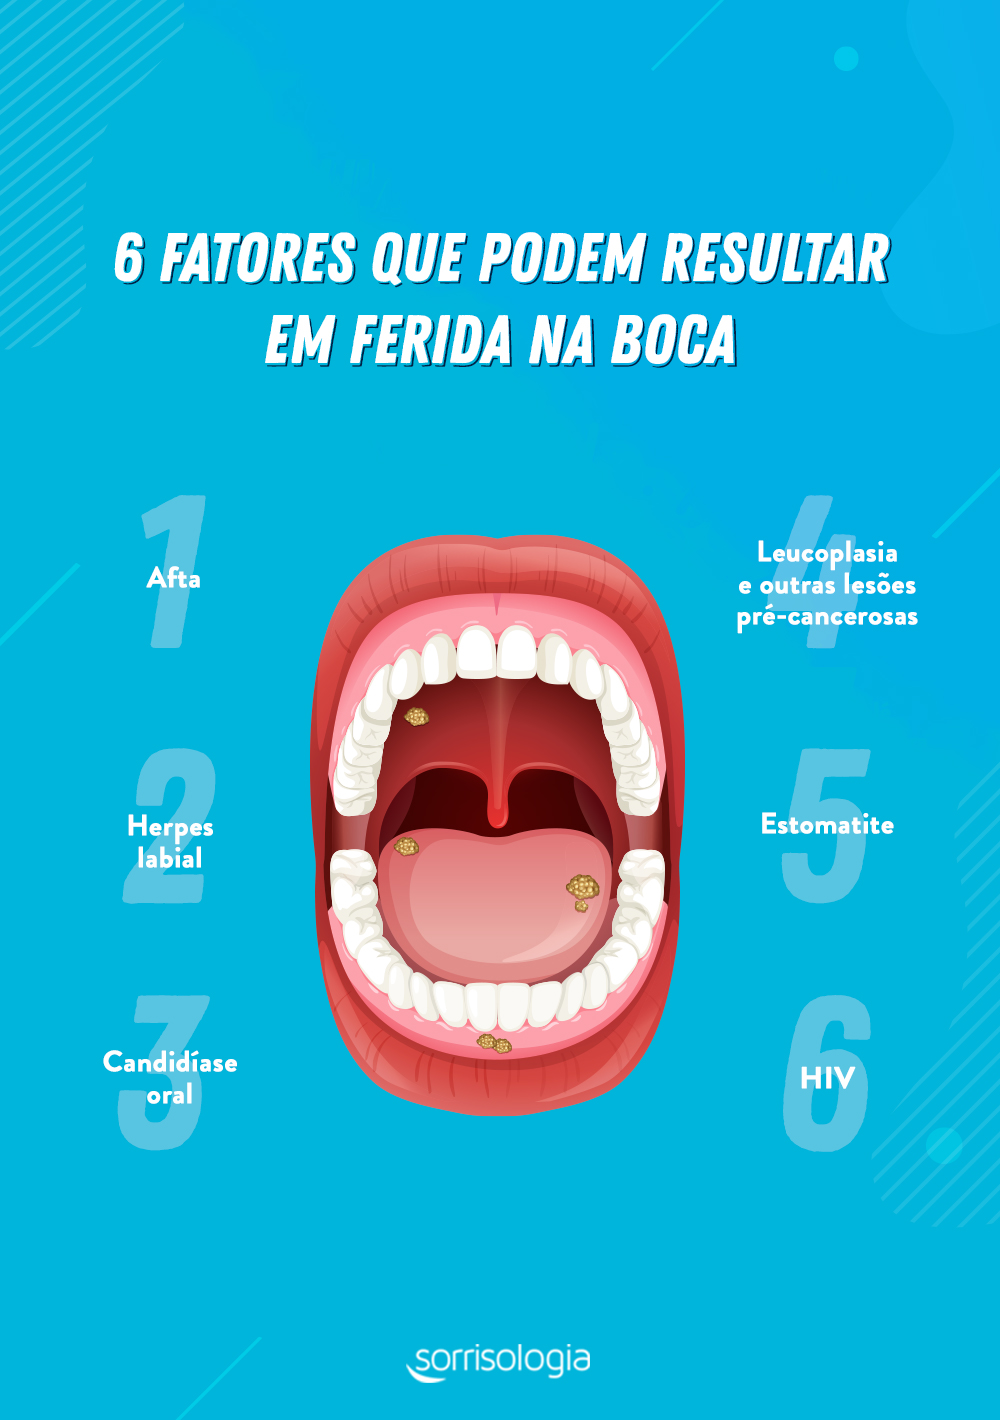 Ferida na boca: veja as principais causas para o problema bucal